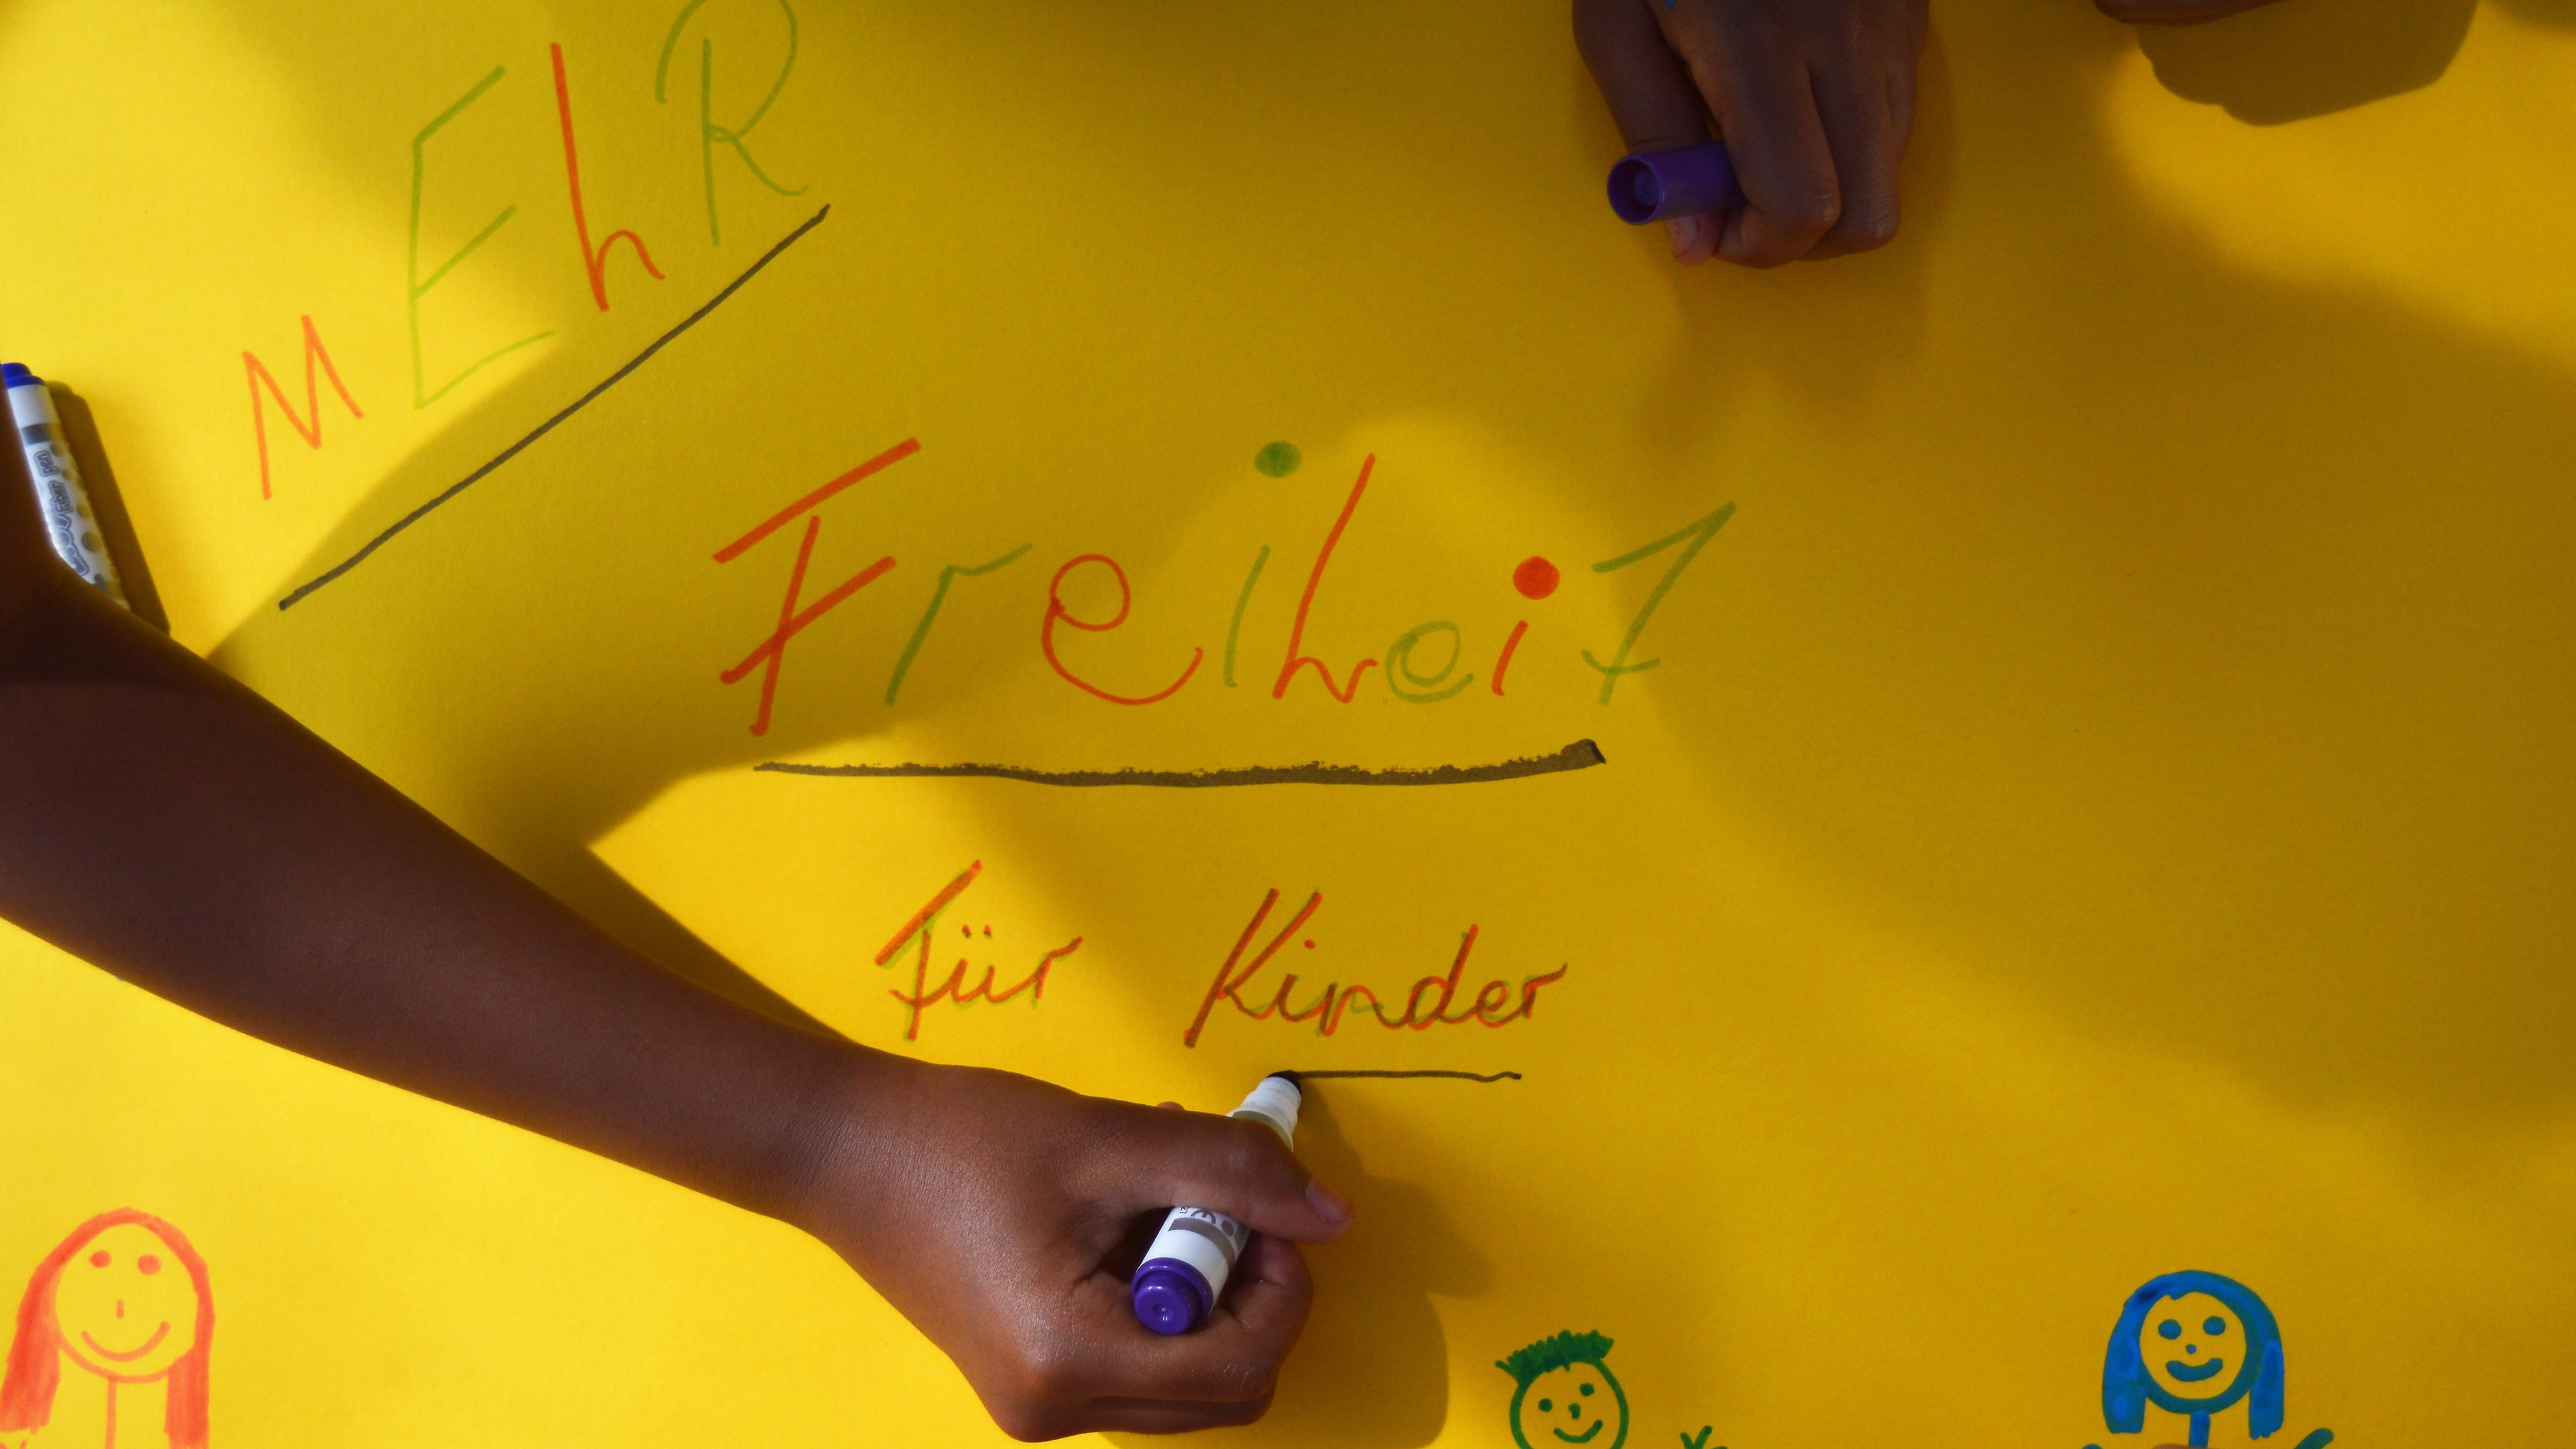 Kinderhände malen und schreiben an einem Plakat mit dem Slogan "Mehr Freiheit für Kinder".